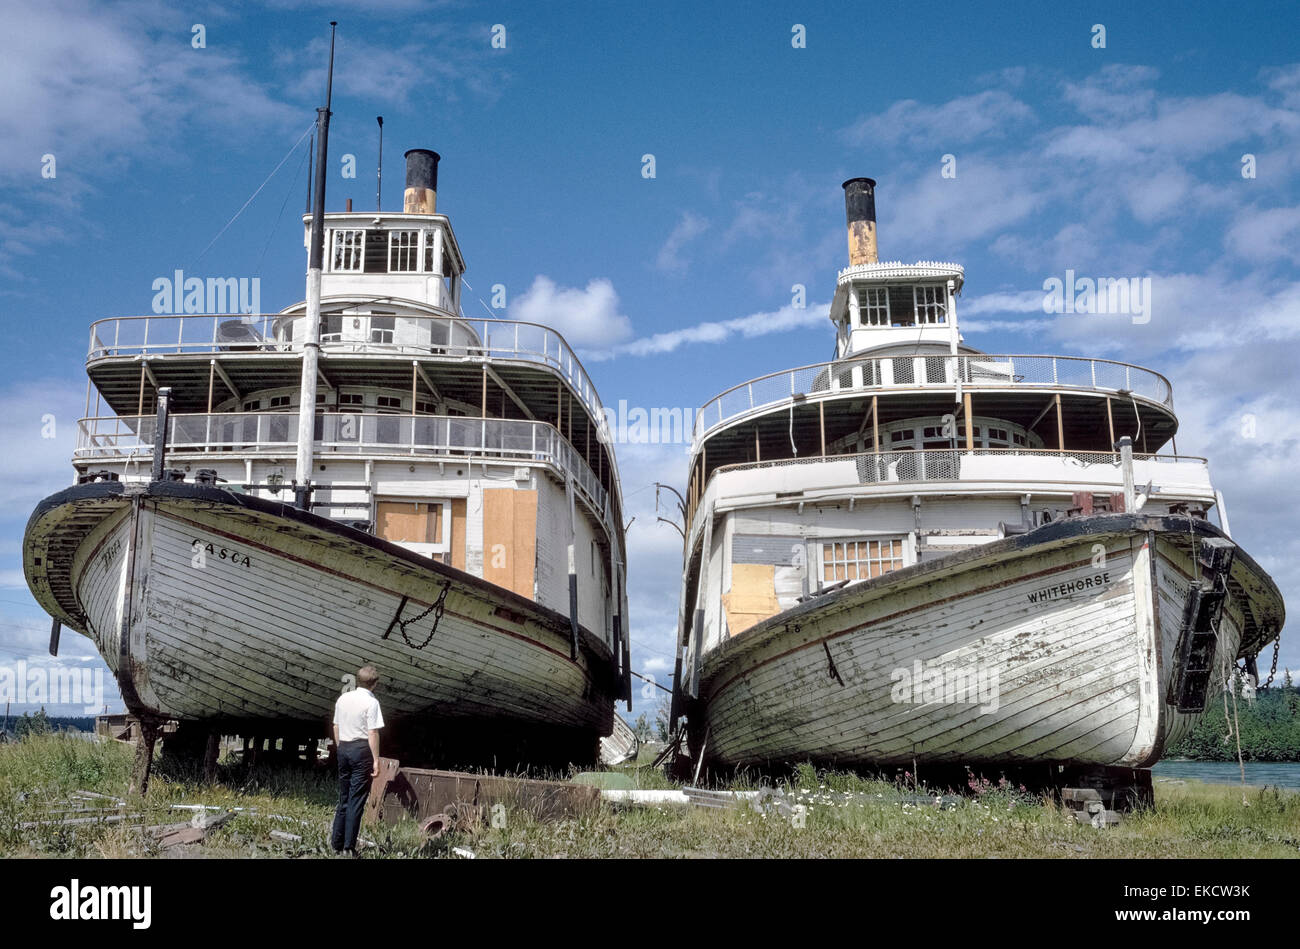 Deux-roues arrière en bois historique des bateaux à vapeur qui sillonnaient le fleuve Yukon, au cours de l'or du Klondike Days a passé les dernières années sur le rivage à Whitehorse, capitale du Yukon au Canada. Photographié en 1967, la Casca et navires de Whitehorse depuis plusieurs décennies de service dans les années 1950 et furent détruits par un incendie d'origine inconnue en 1974. Heureusement, un bateau à aubes semblables de l'époque -- le Klondike -- a été restauré dans les années 1960 et continue à être une attraction touristique dans la région de Whitehorse. Photo historique. Banque D'Images